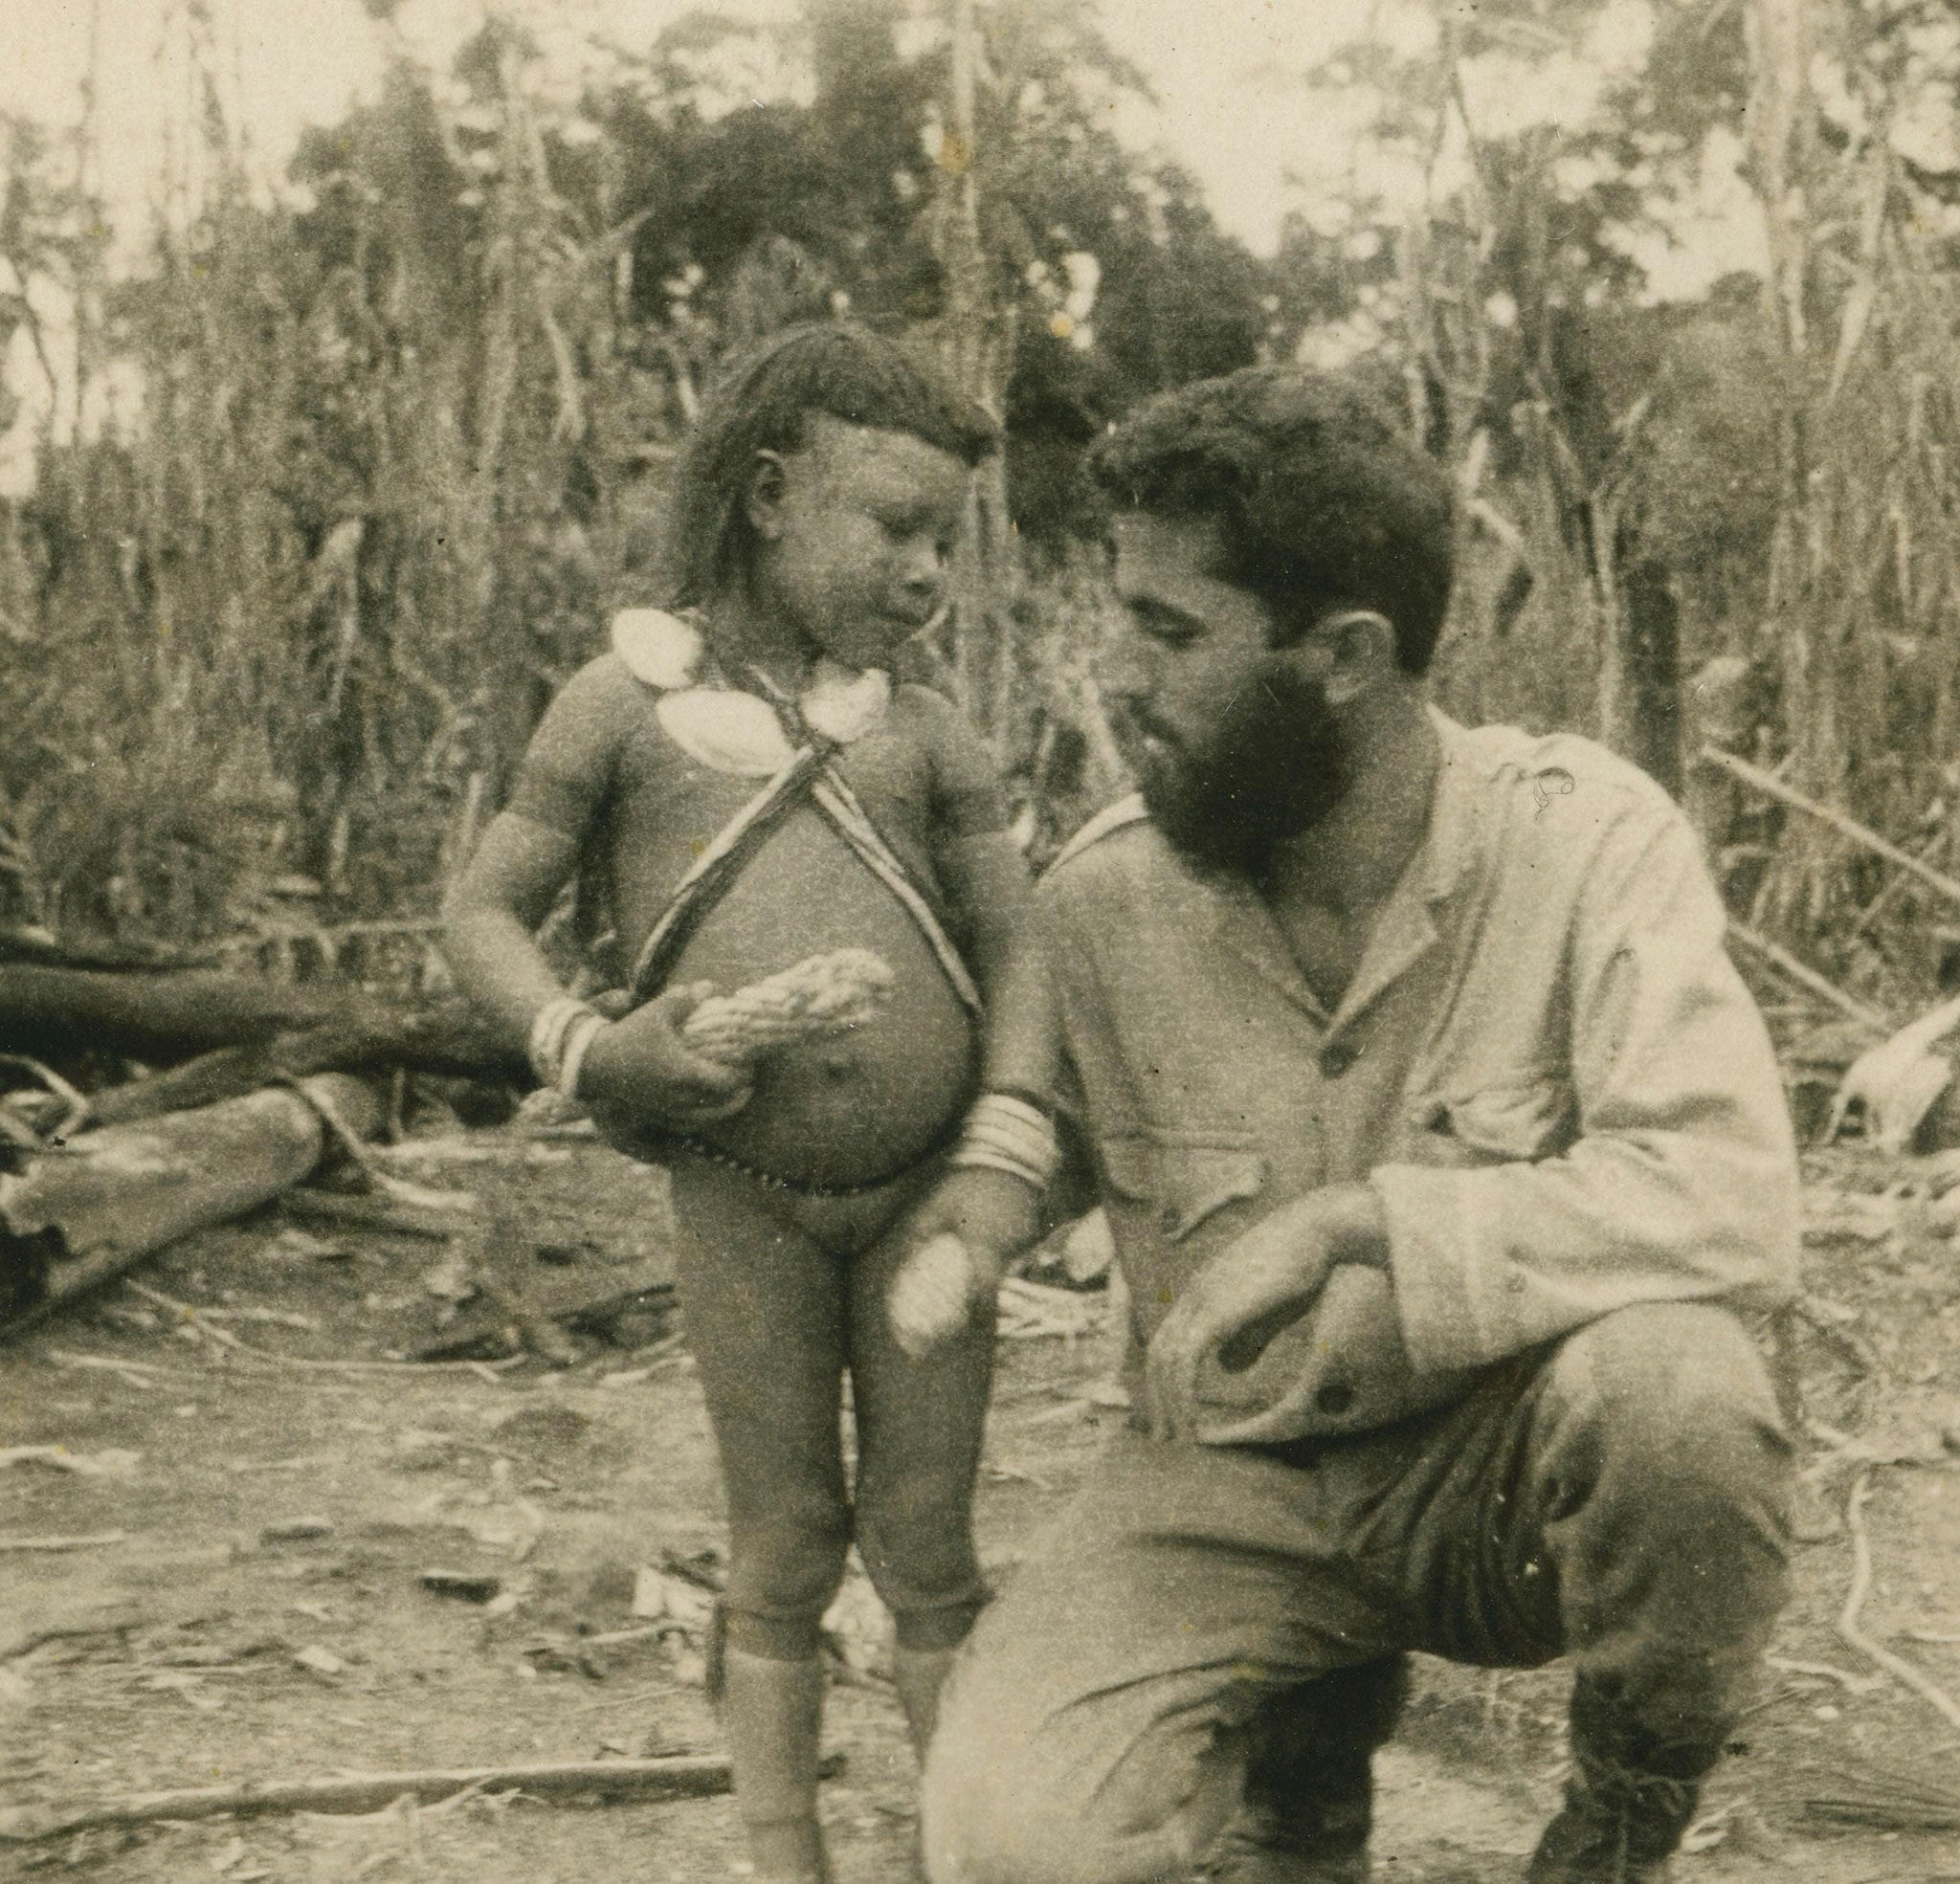 O engenheiro e geólogo Victor Dequech ao lado de uma criança indígena